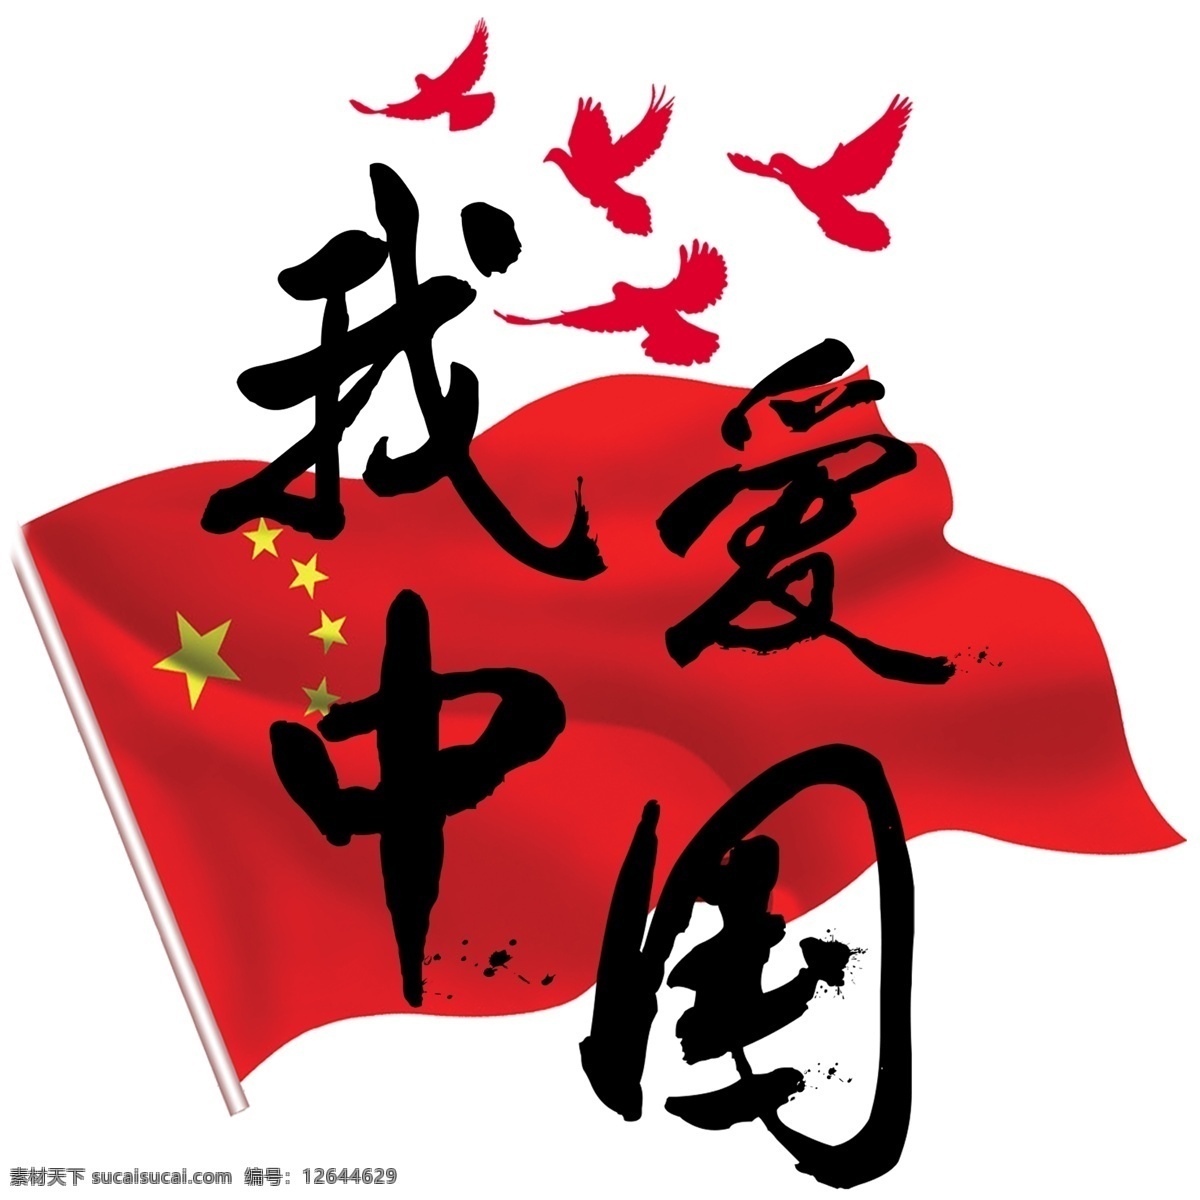 我爱 中国 毛笔字 国旗 和平鸽 泼墨 字体 艺术 字 我爱中国 中国国旗 红色 五星红旗 艺术字